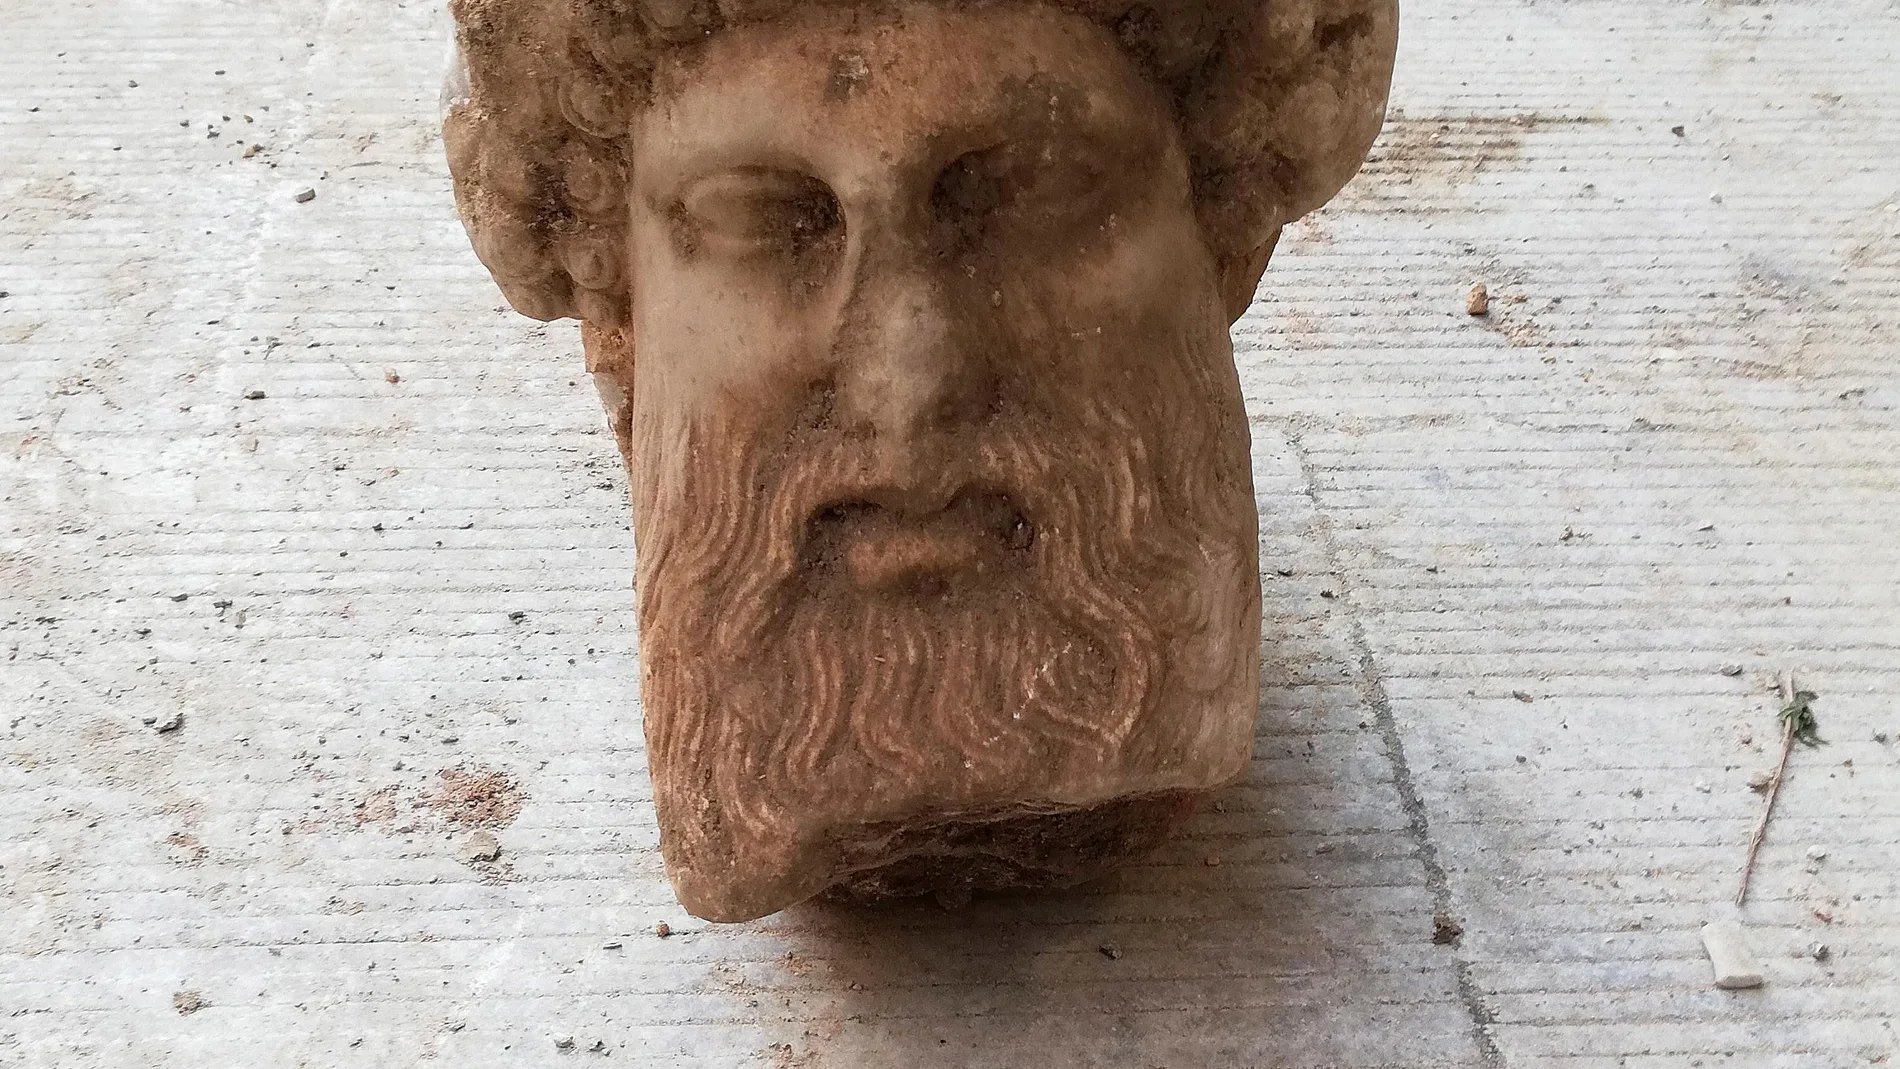 Hallan una cabeza de Hermes en pleno centro de Atenas durante una obra vial